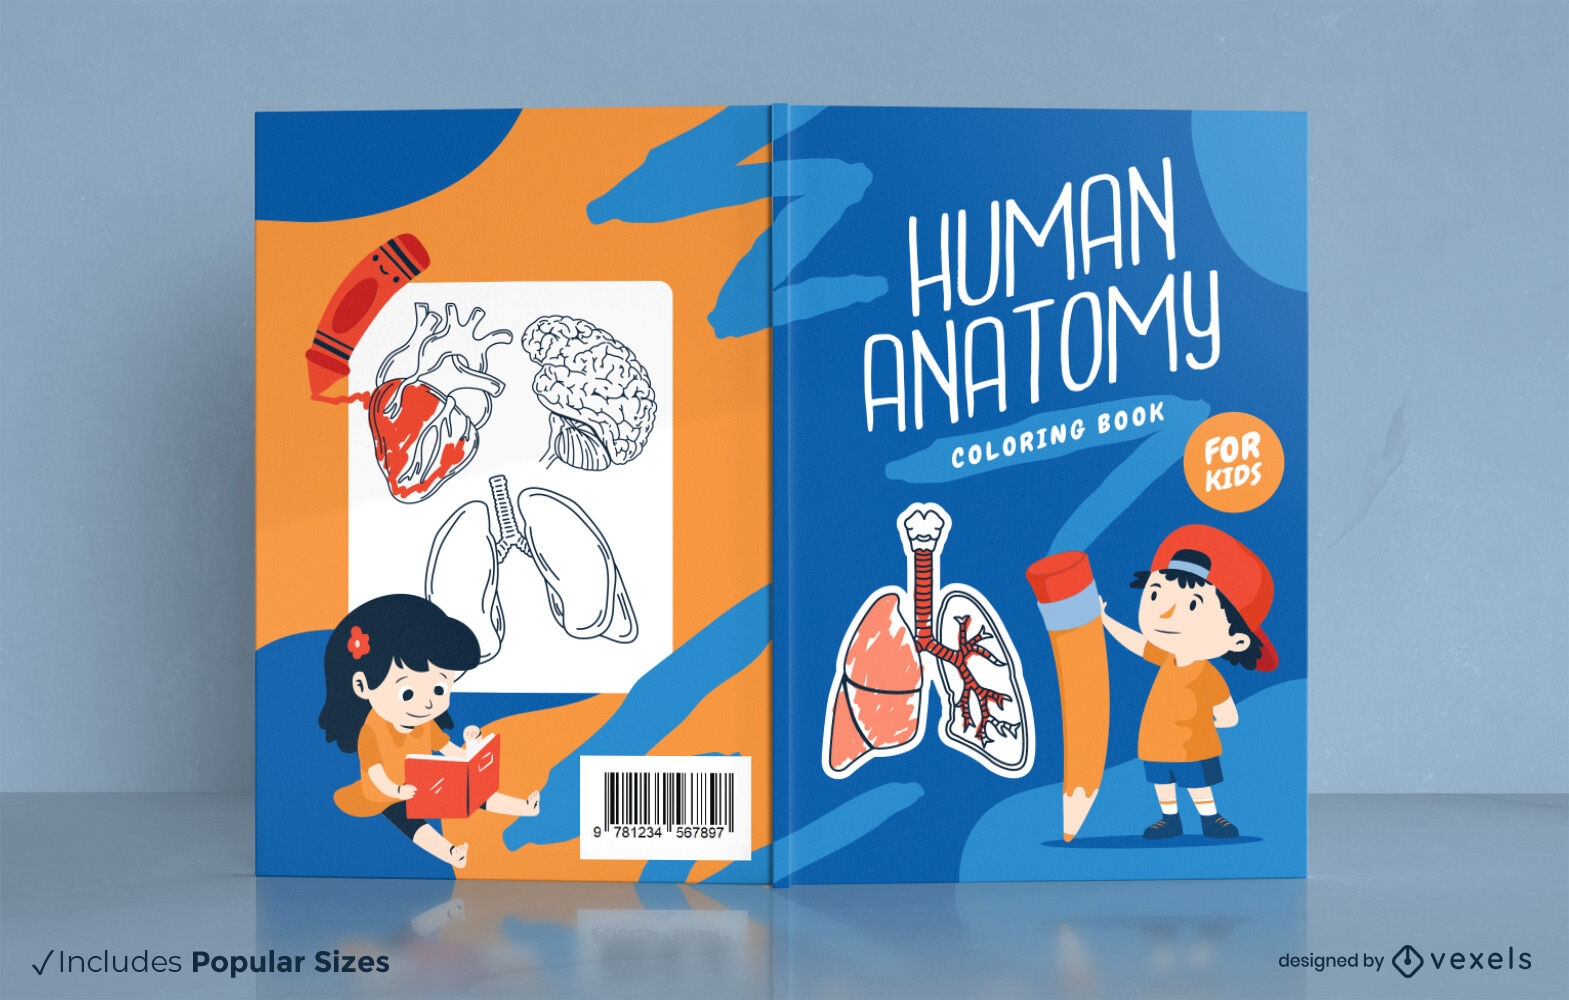 Dise?o de portada de libro de anatom?a humana para ni?os.